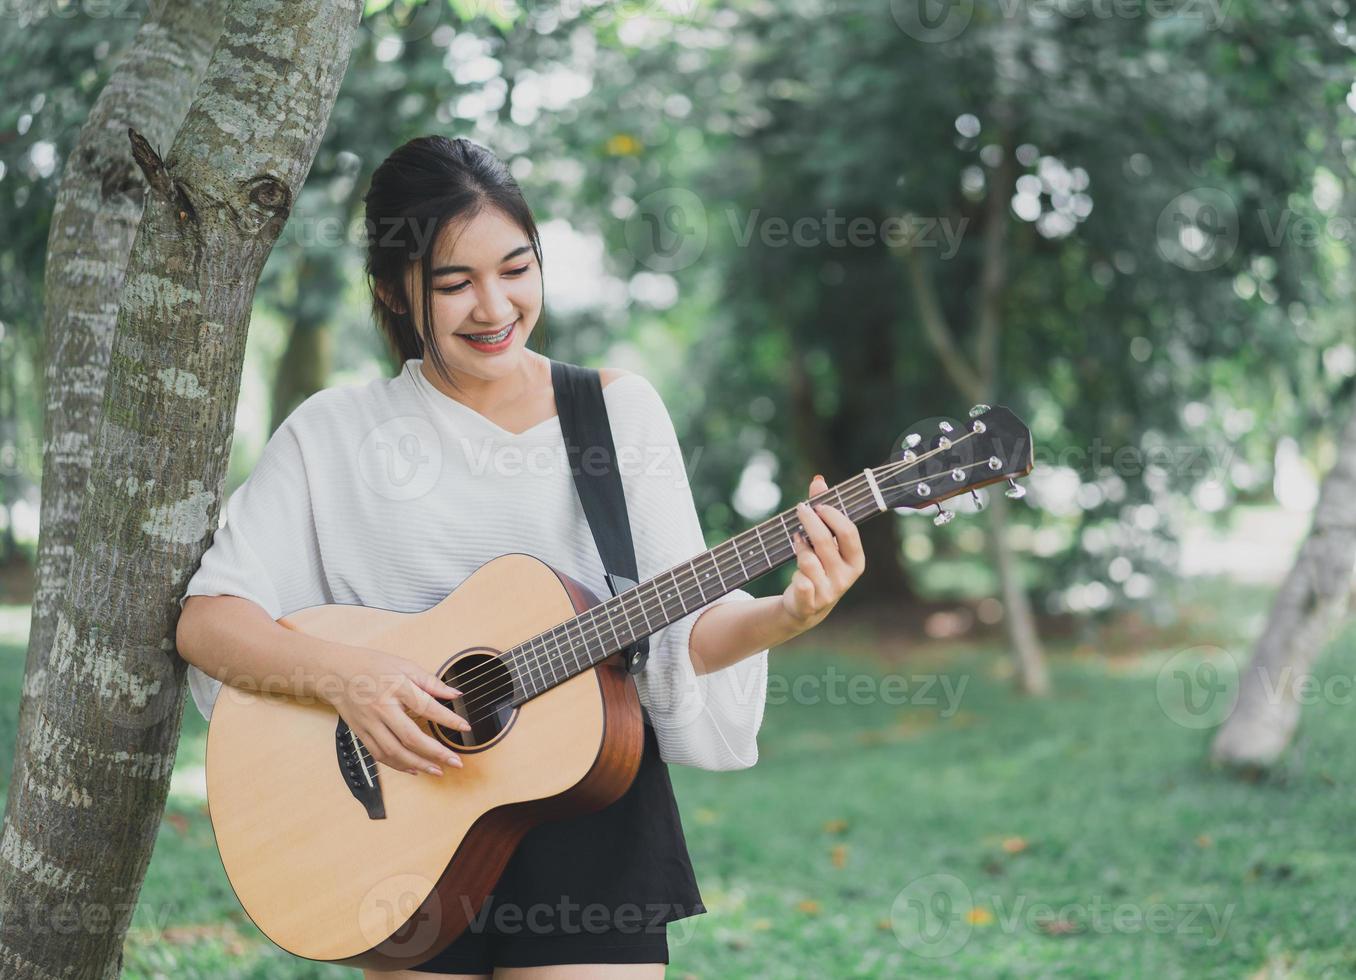 asiatisk ung kvinna spelar gitarr och sjunger musik i parken, asiatisk kvinna spelar gitarr i trädgården foto